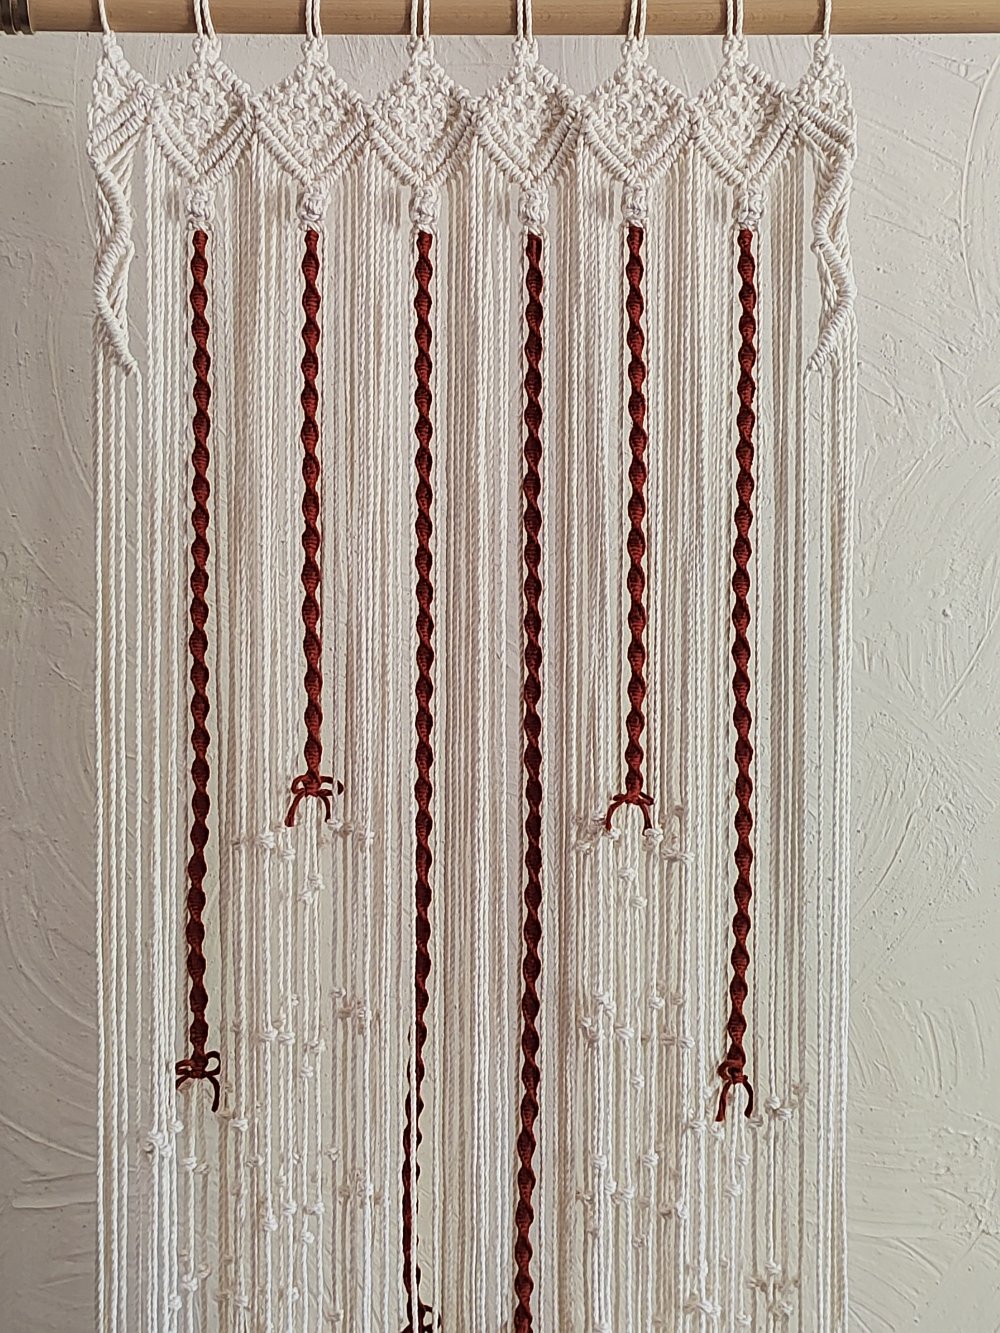 Rideau de perles 80x200, cantonnière de fenêtre en macramé